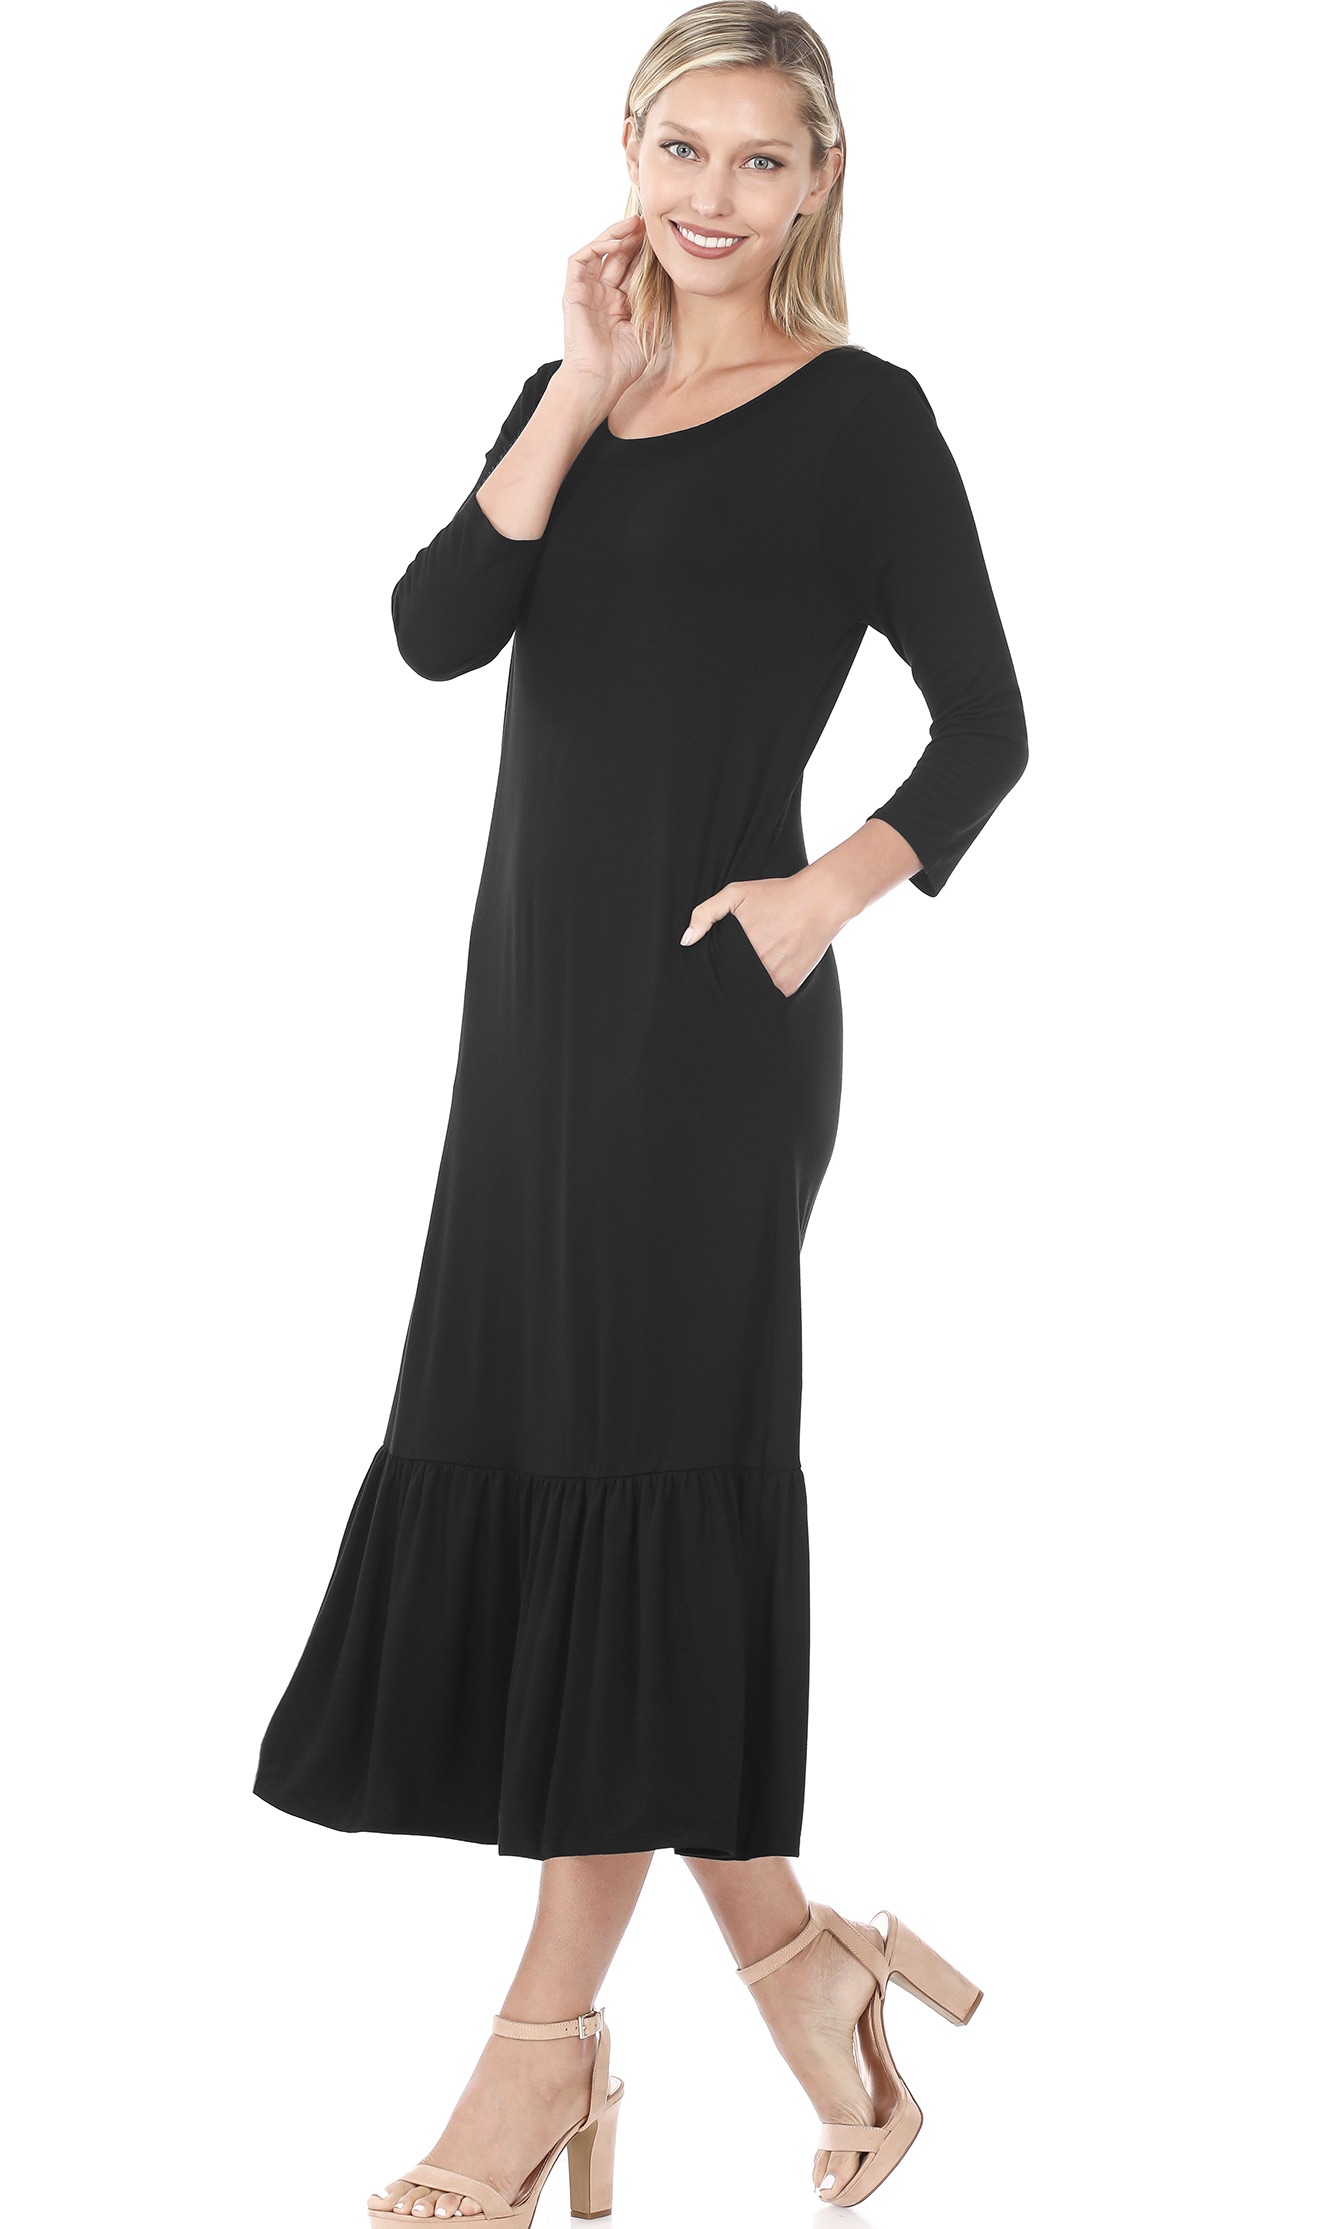 Zenana 3/4 Sleeve Ruffle Hem Maxi Dress With Pockets Black [VD7075 ...